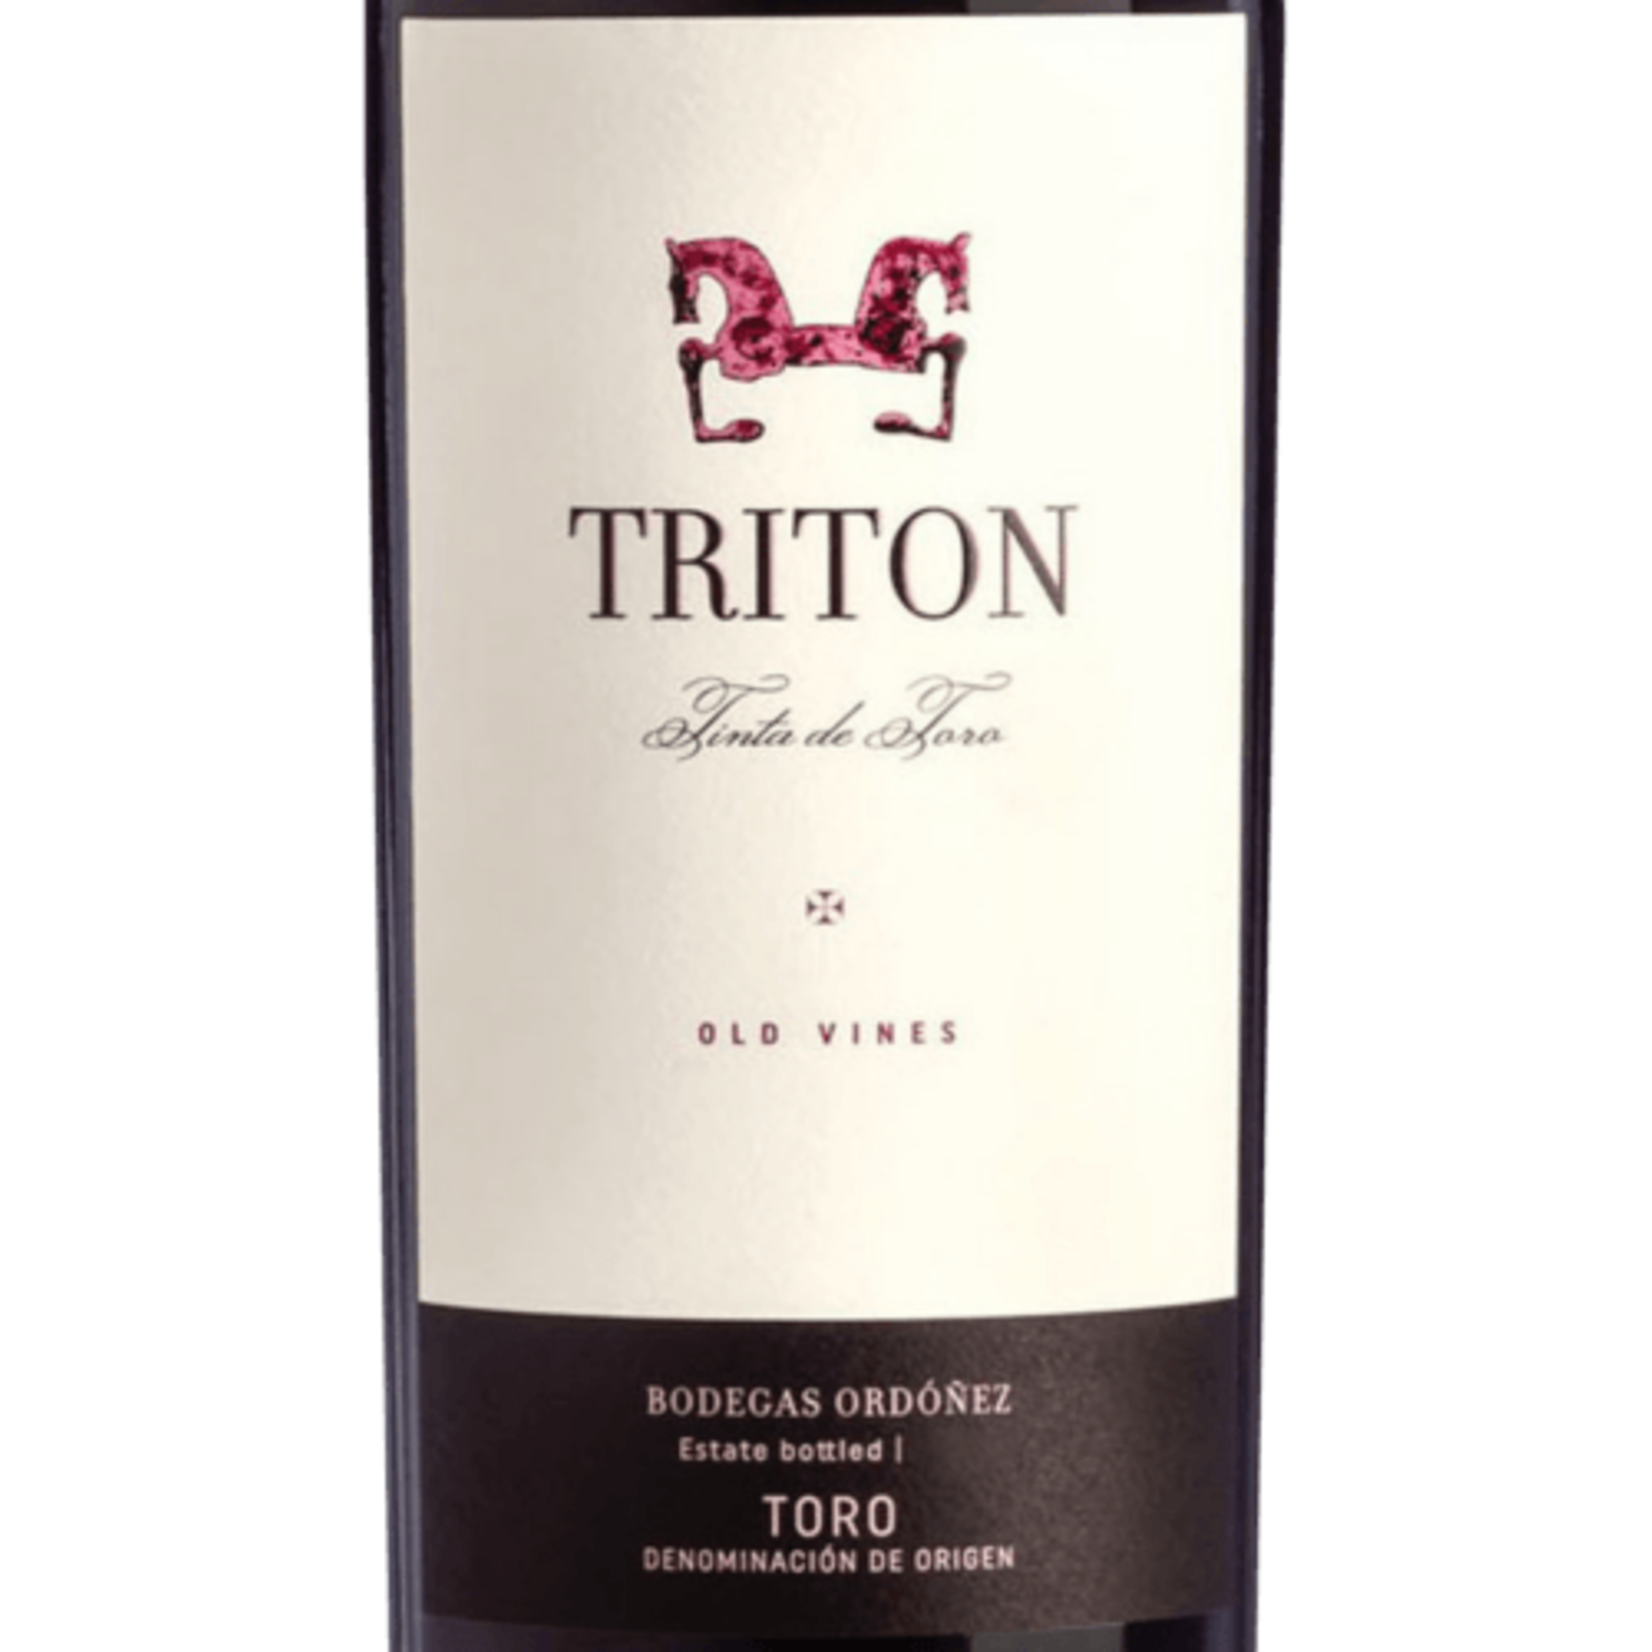 Bodegas Ordoñez Bodegas Ordonez Toro Triton Tinto de Toro Old Vine 2021 Toro, Spain